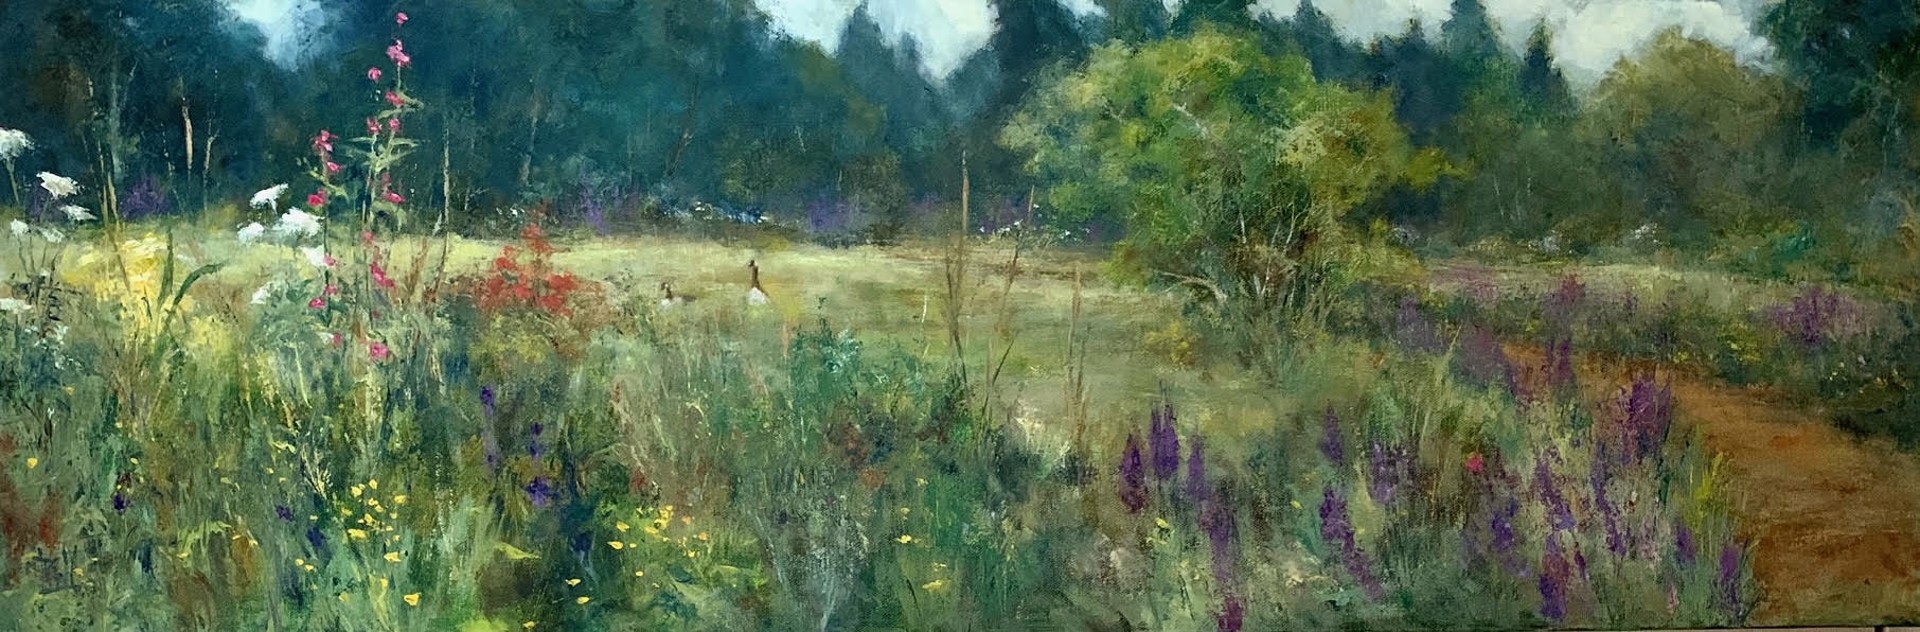 Wildflower Meadow - Bloedel Reserve by Pamela Wachtler